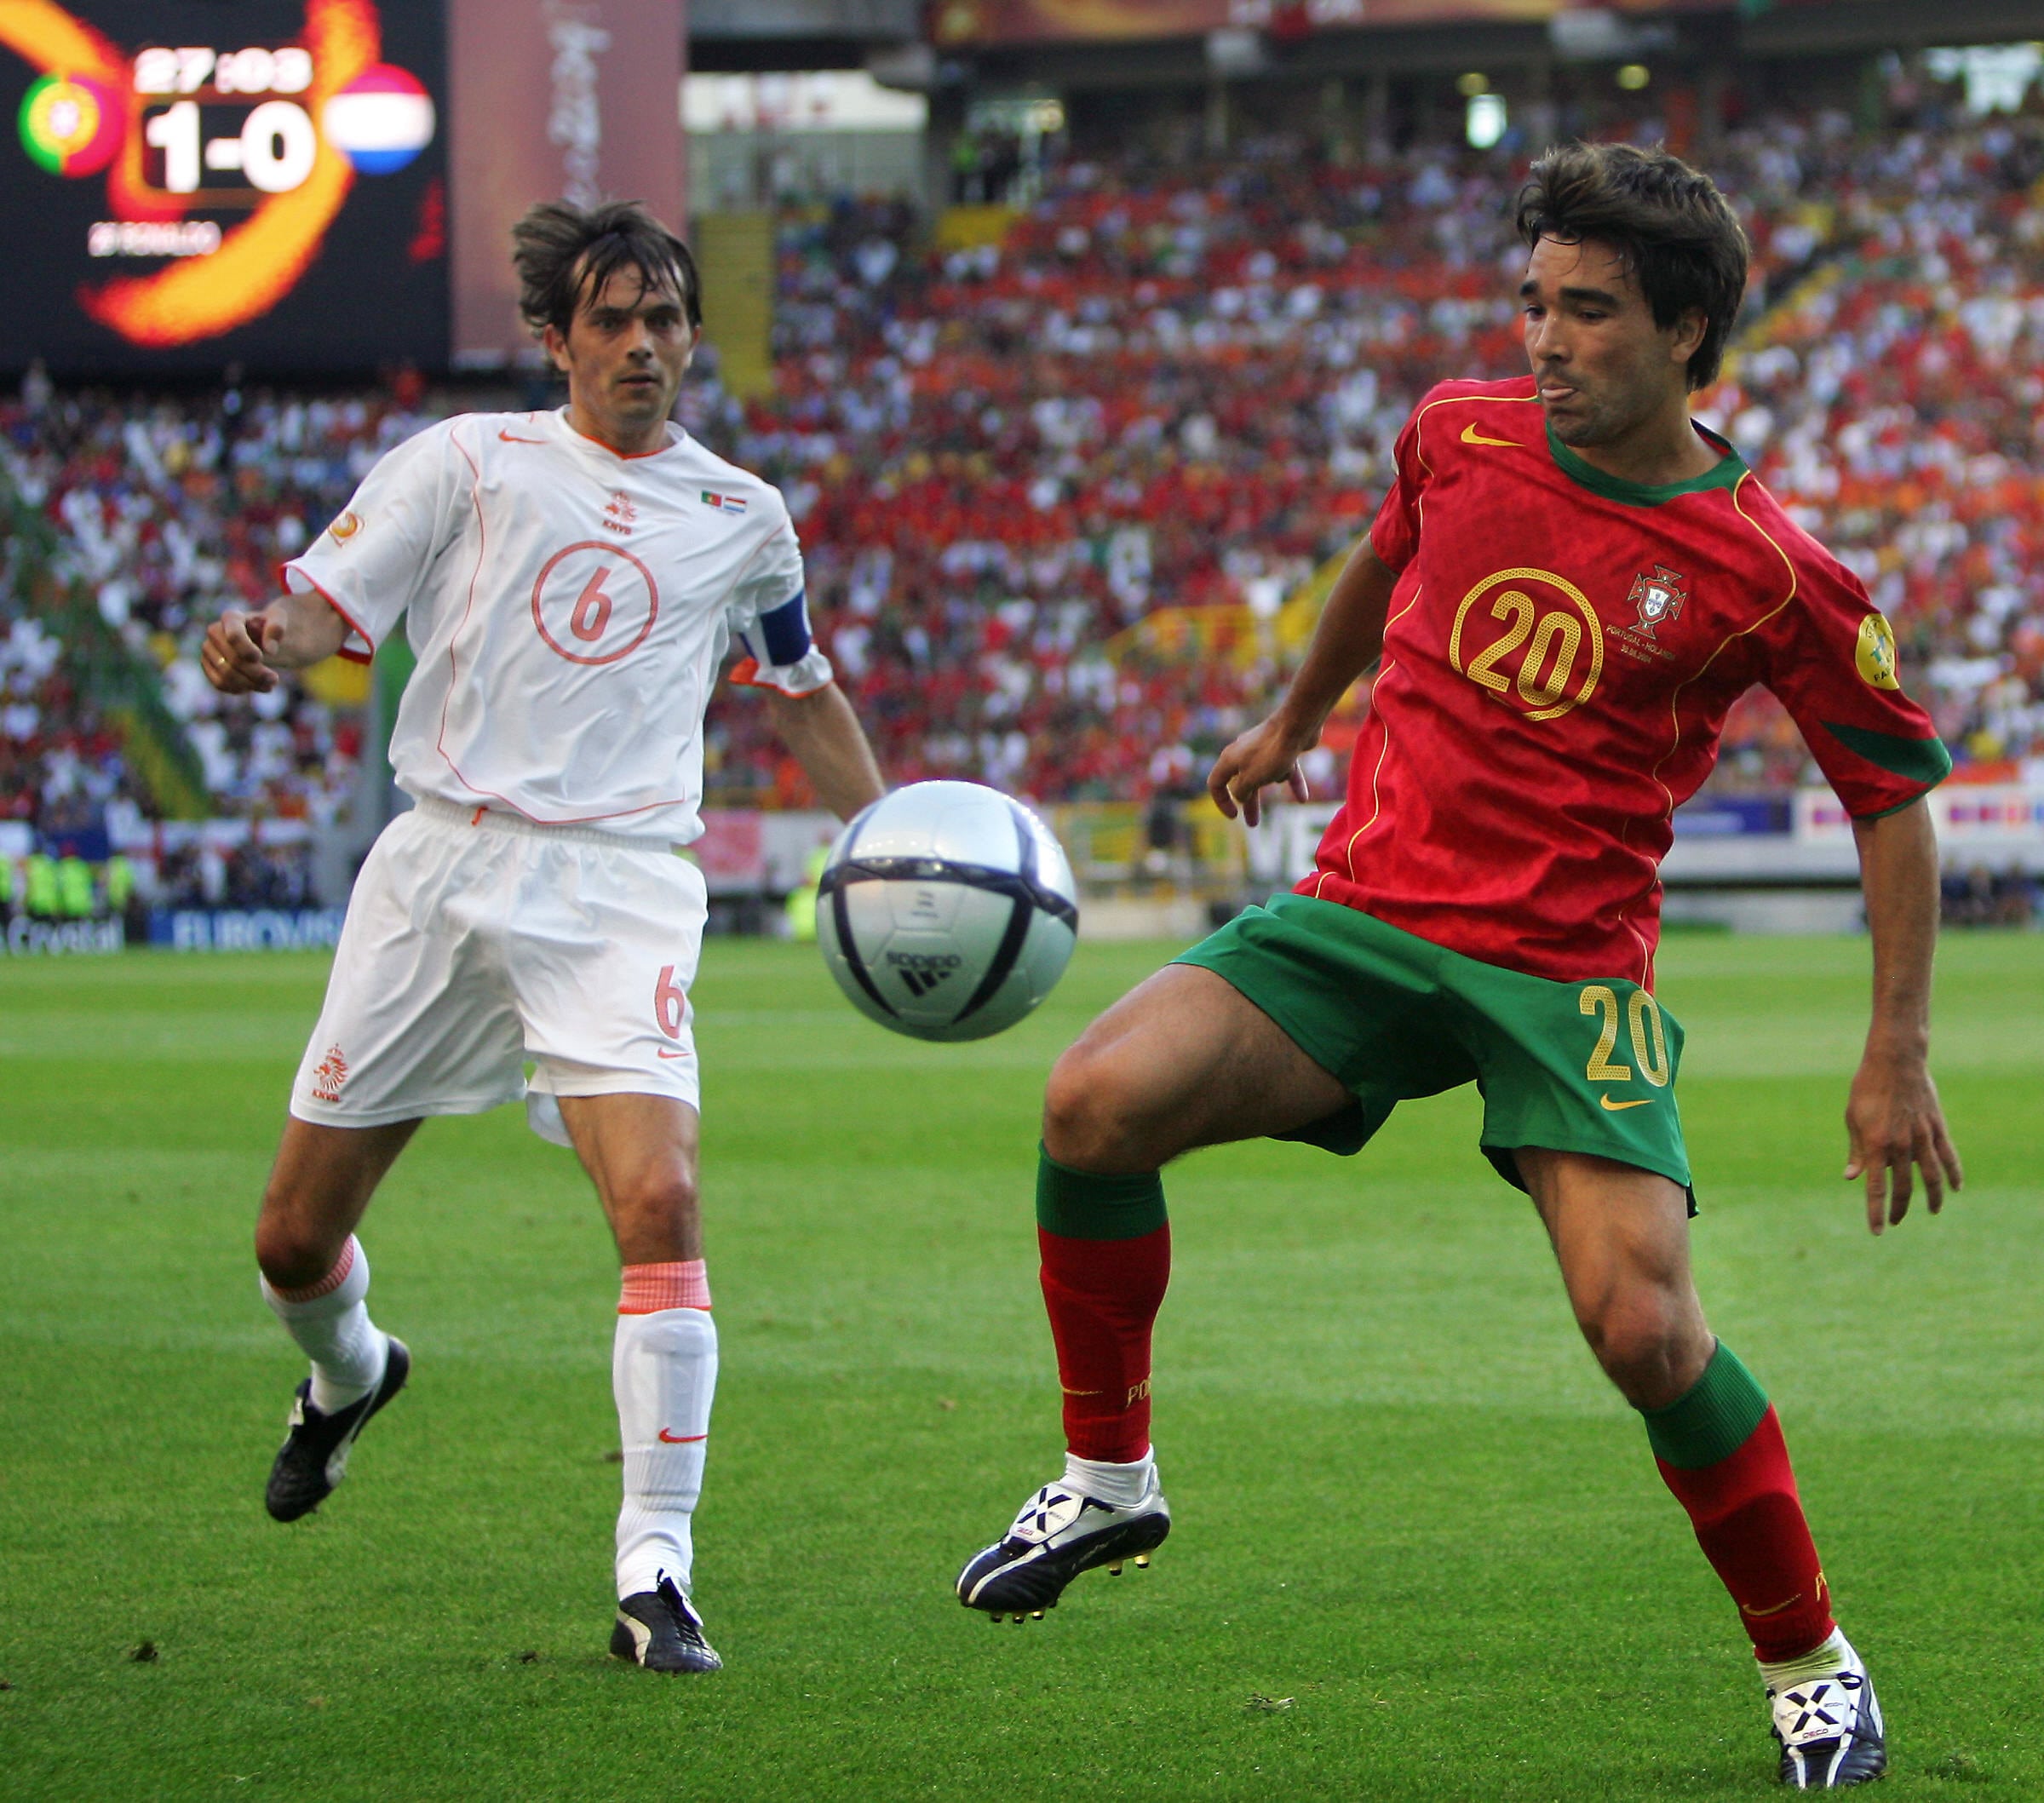 Deco a disputar a bola no Euro de futebol de 2004 realizado em Portugal